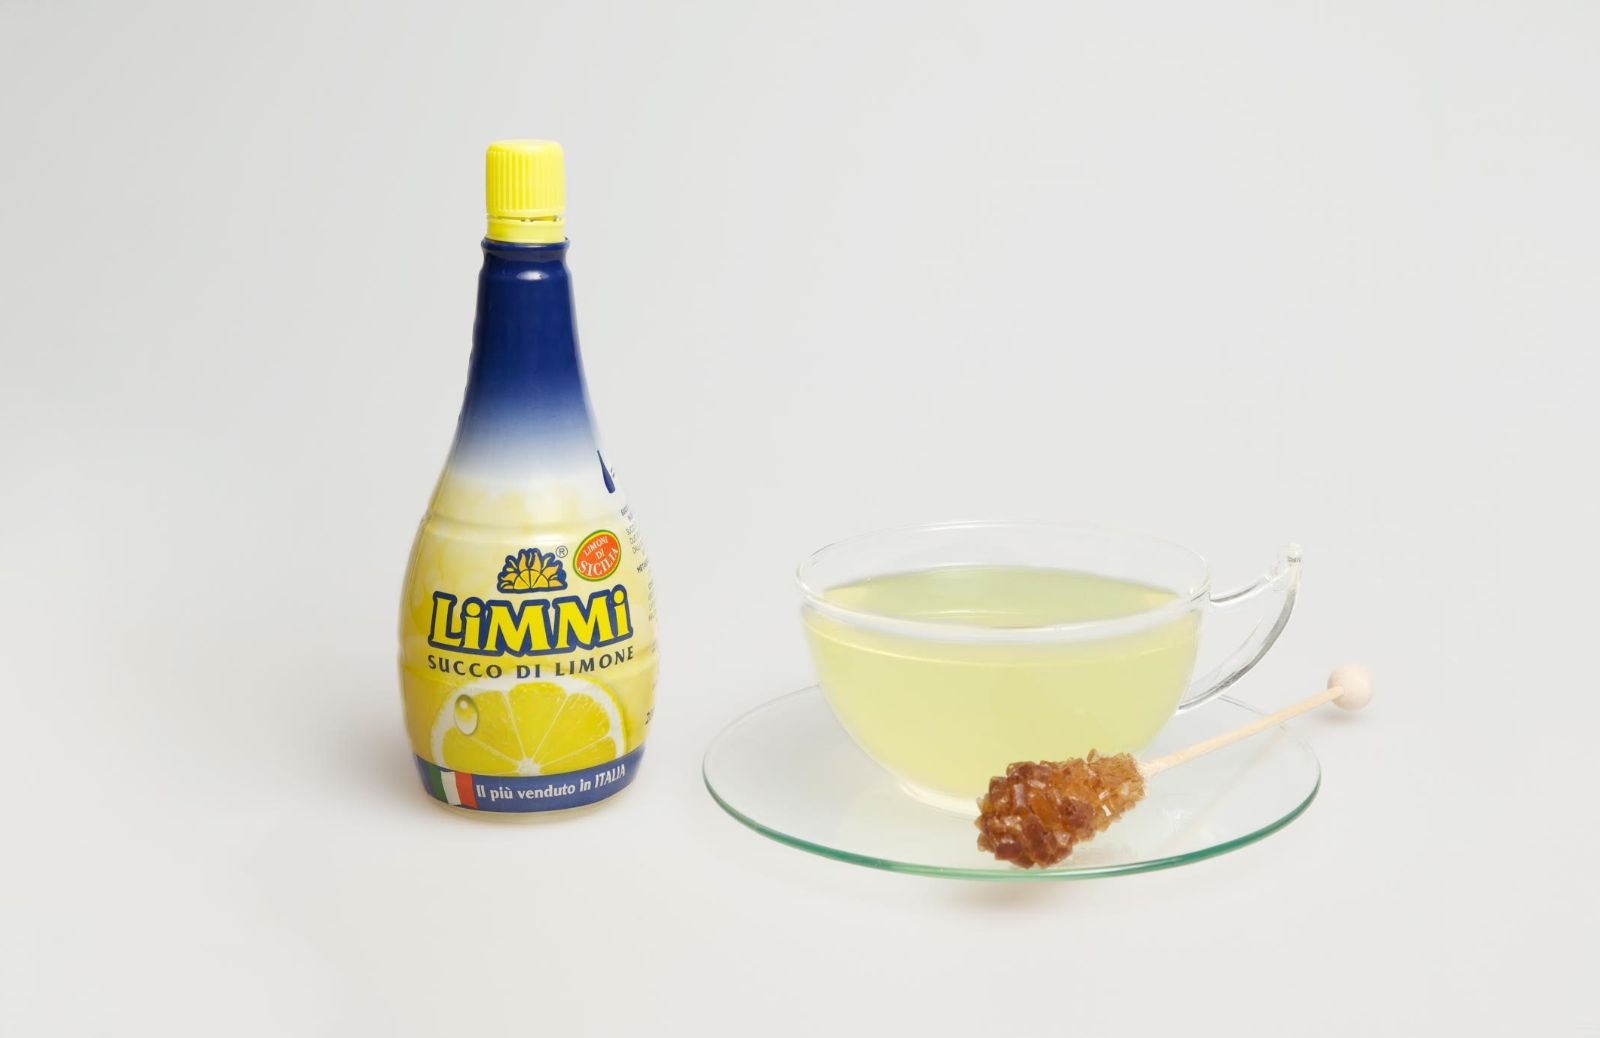 Acque vitaminiche - La ricetta: acqua, miele e limone